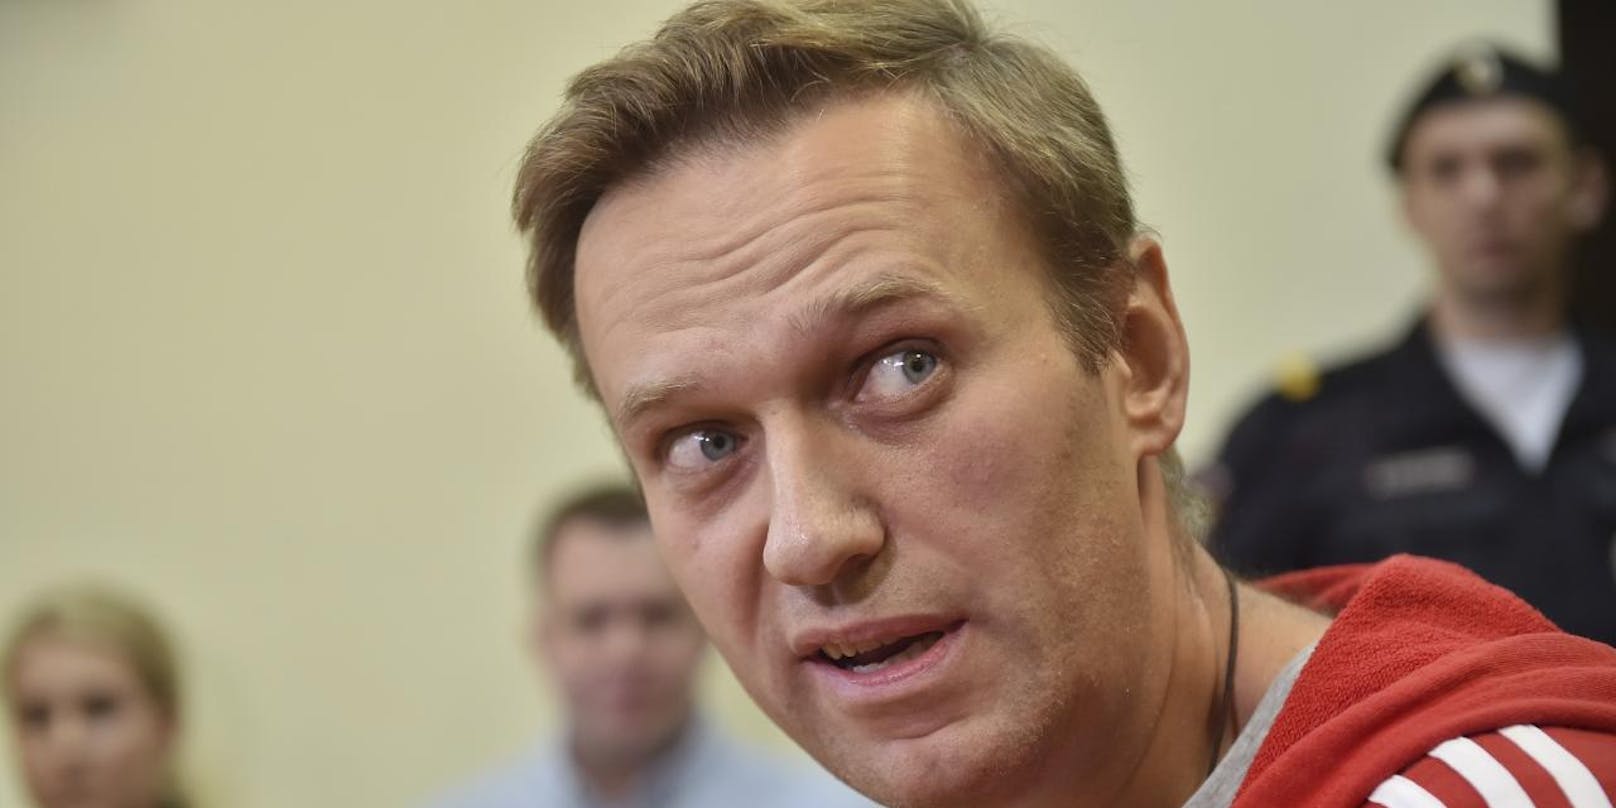 Kreml-Kritiker Alexej Nawalny hatte schon 2018 Probleme mit der russischen Regierung:
Der russische Oppositionsführer Alexej Nawalny wurde am 14. Juni 2018 nach dreißig Tagen in Haft wieder in die Freiheit entlassen.